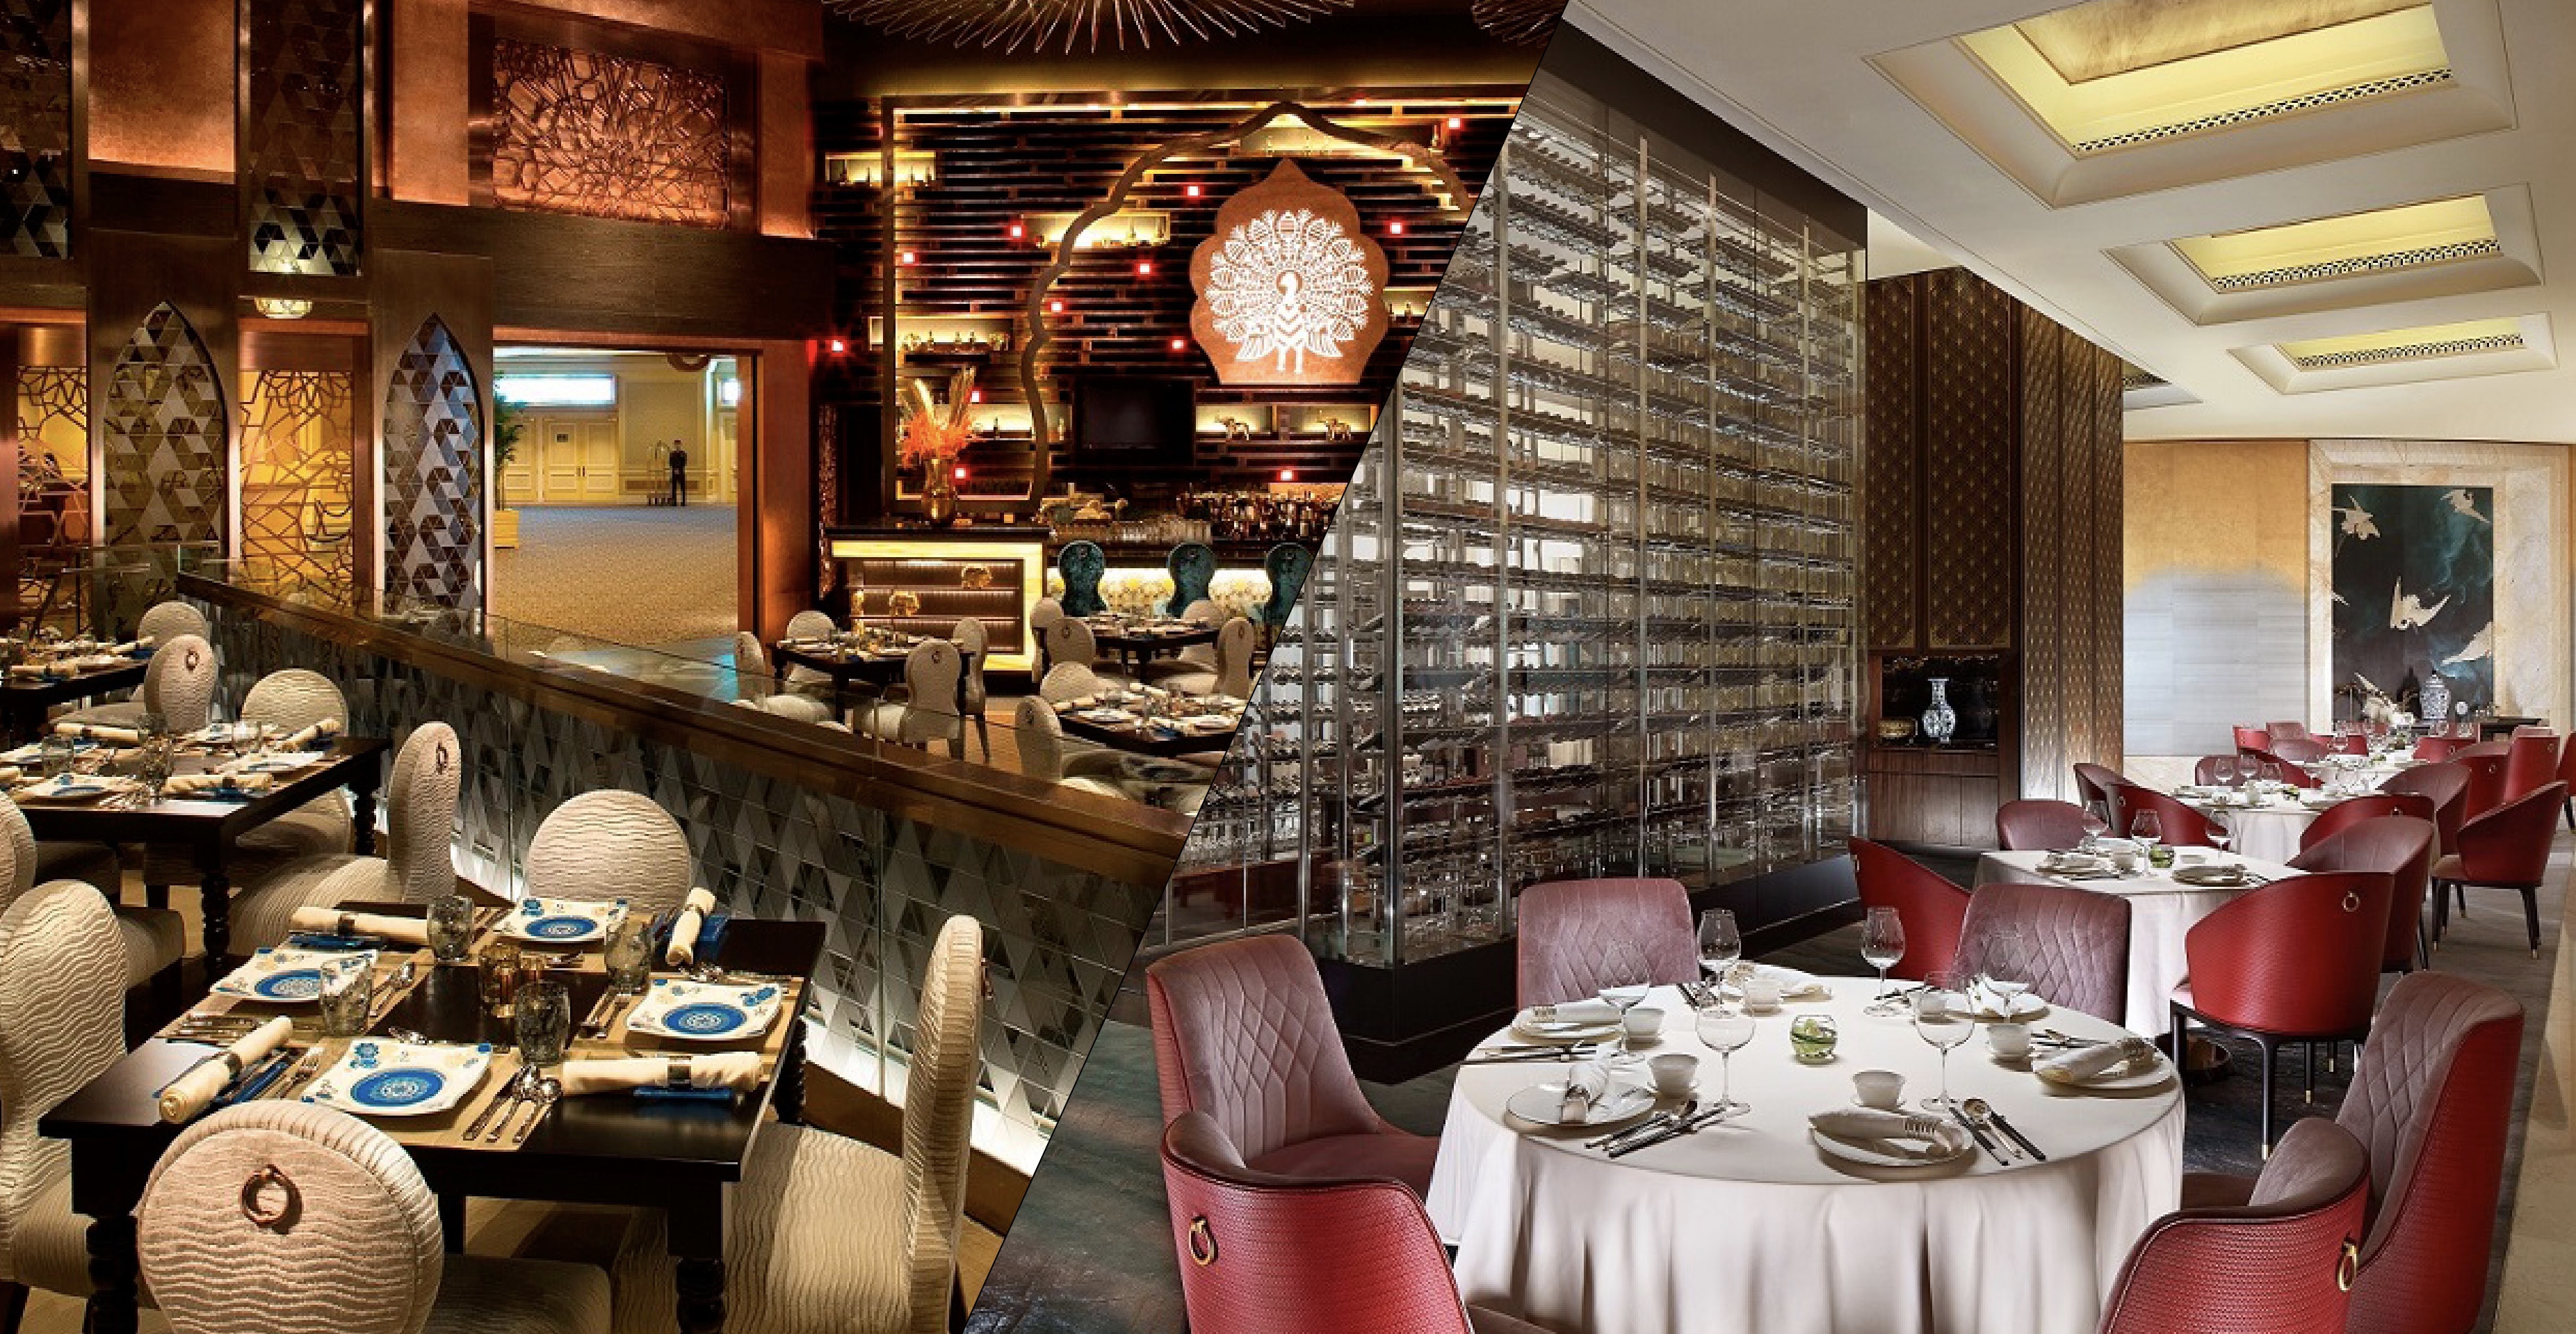 澳门金沙旗下“皇雀印度餐厅”及“紫逸轩”荣获米其林星级评定